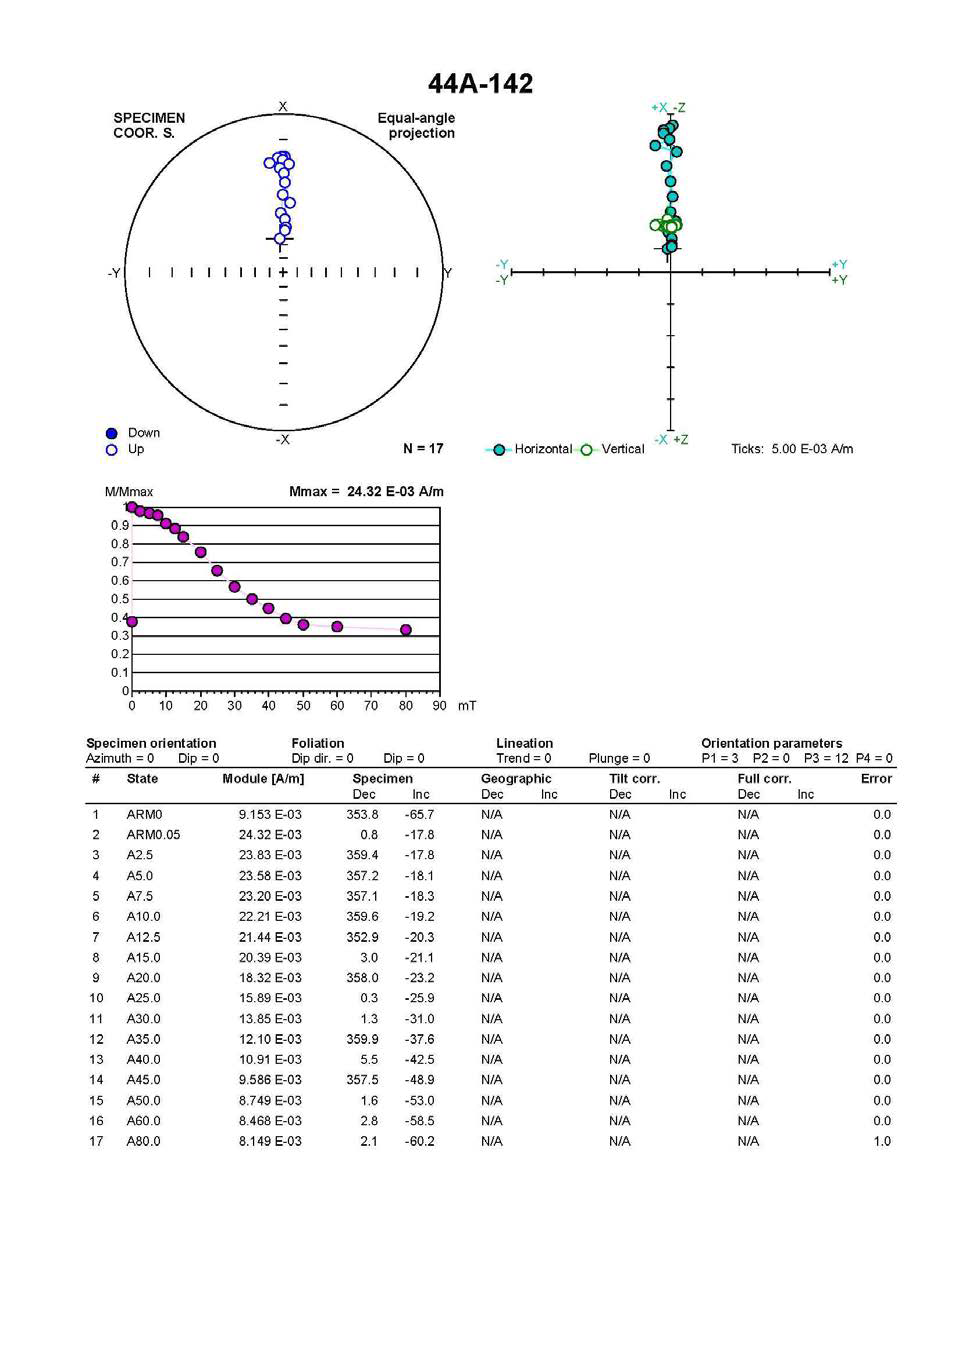 RC15-GC44 코어의 142 시료의 비자기이력 잔류자화 측정 결과,